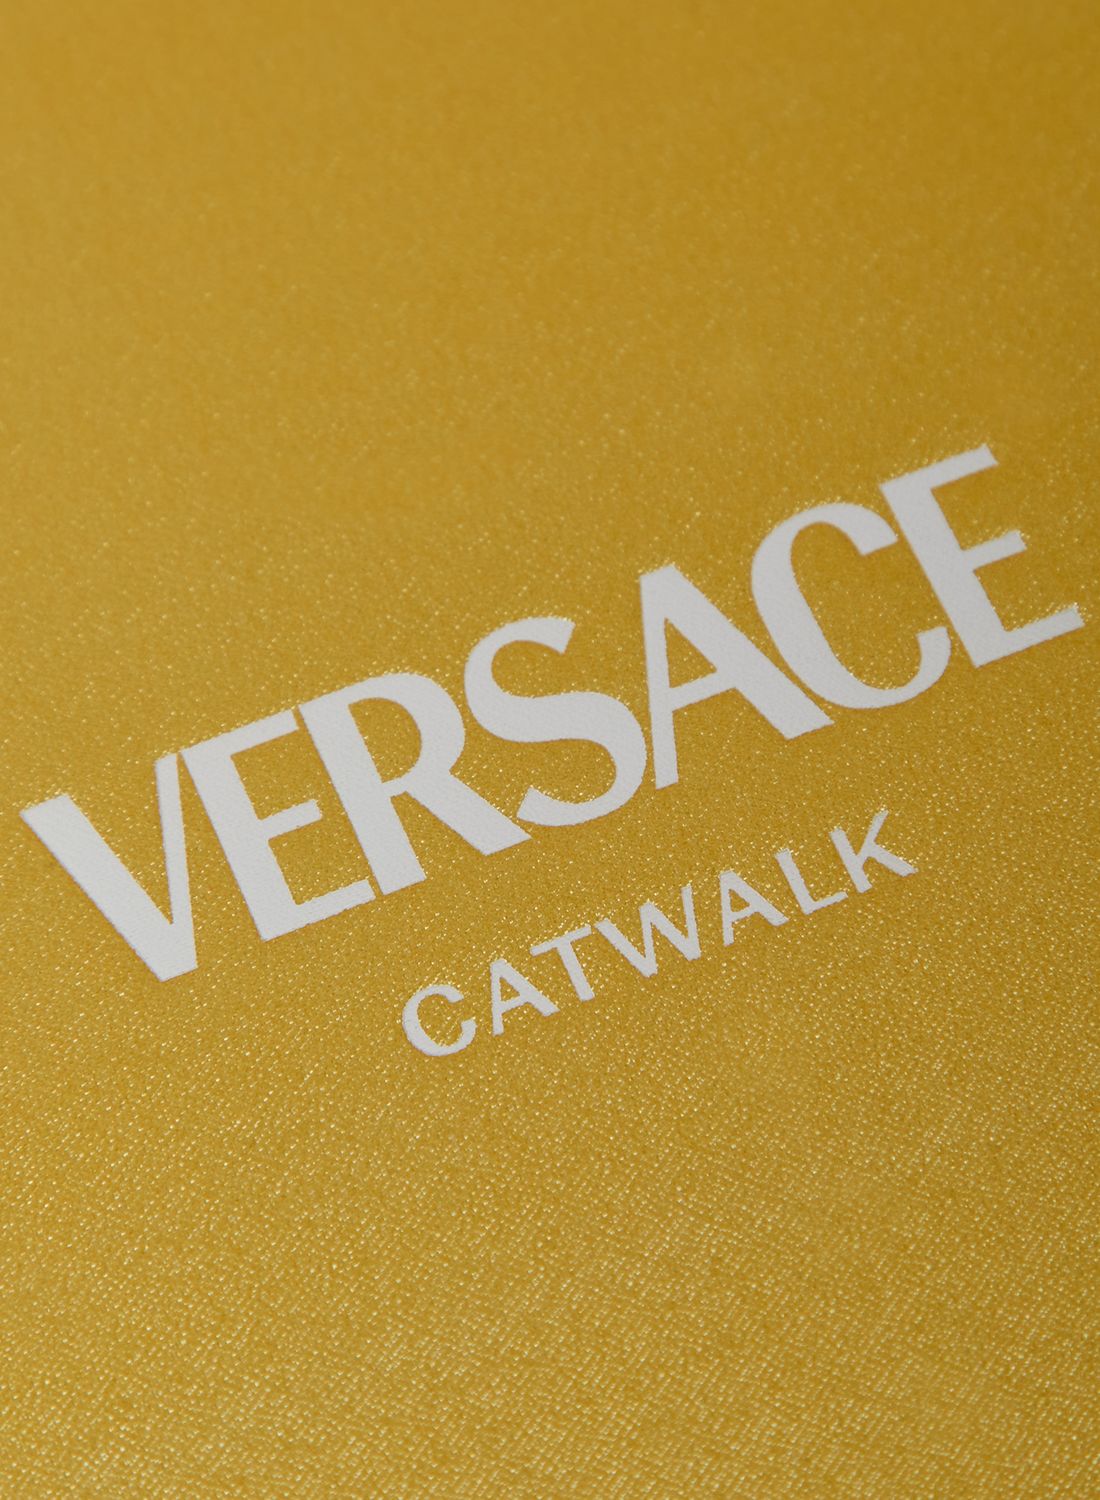 NEW Book Versace Catwalk 9780500023808